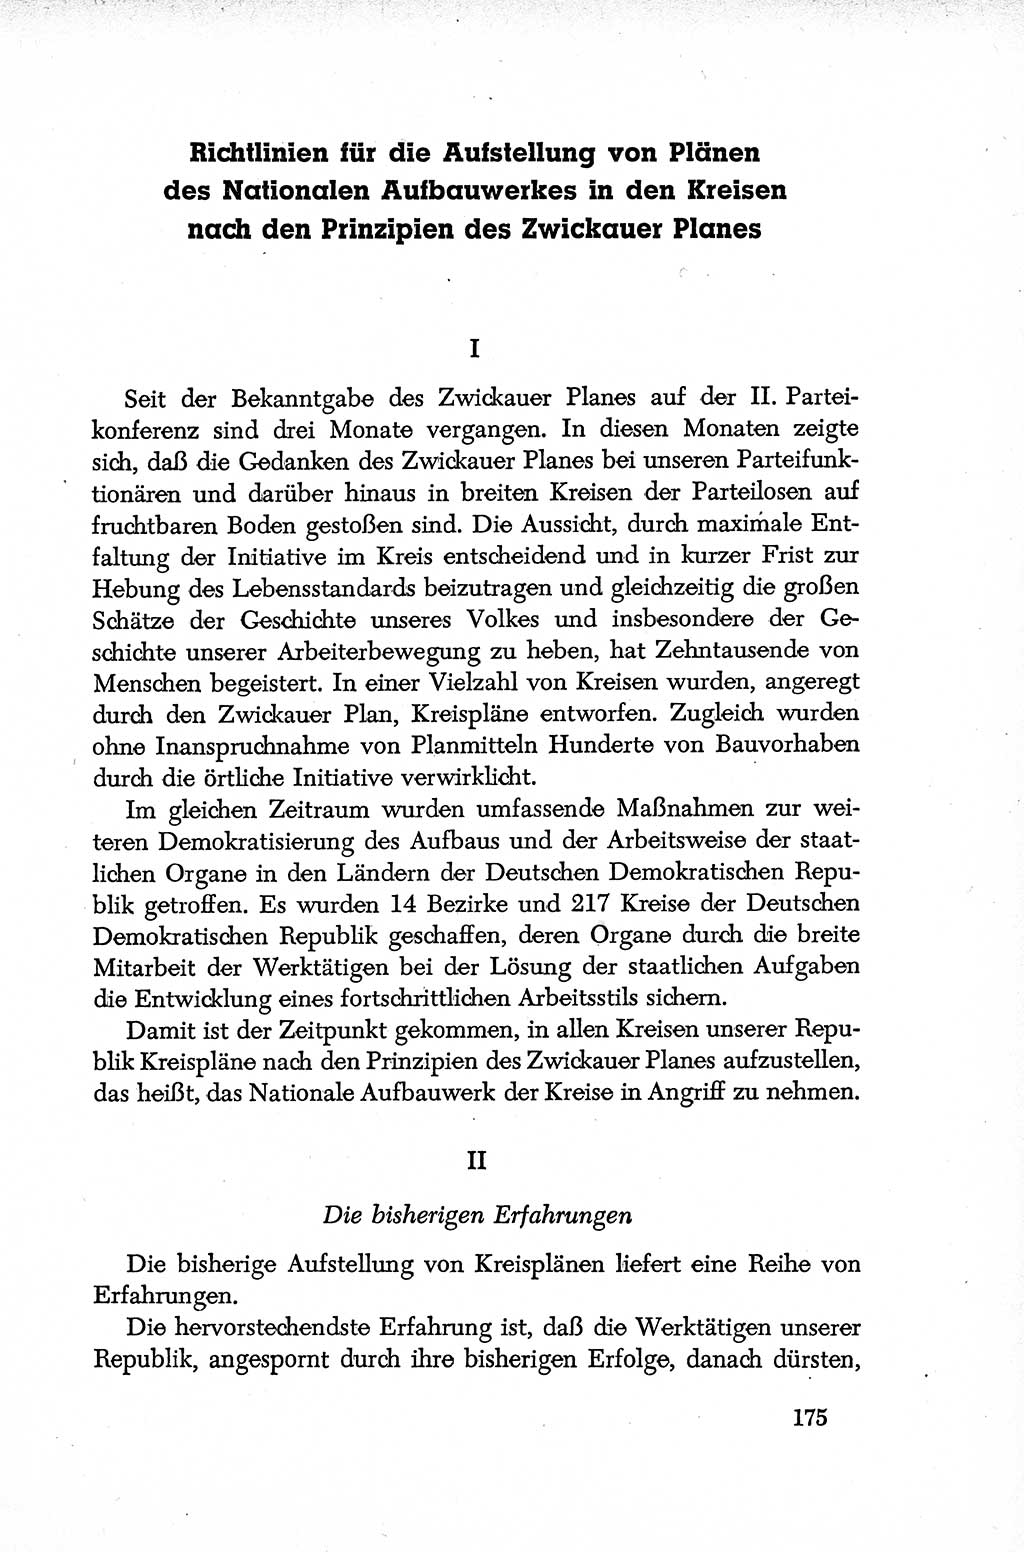 Dokumente der Sozialistischen Einheitspartei Deutschlands (SED) [Deutsche Demokratische Republik (DDR)] 1952-1953, Seite 175 (Dok. SED DDR 1952-1953, S. 175)